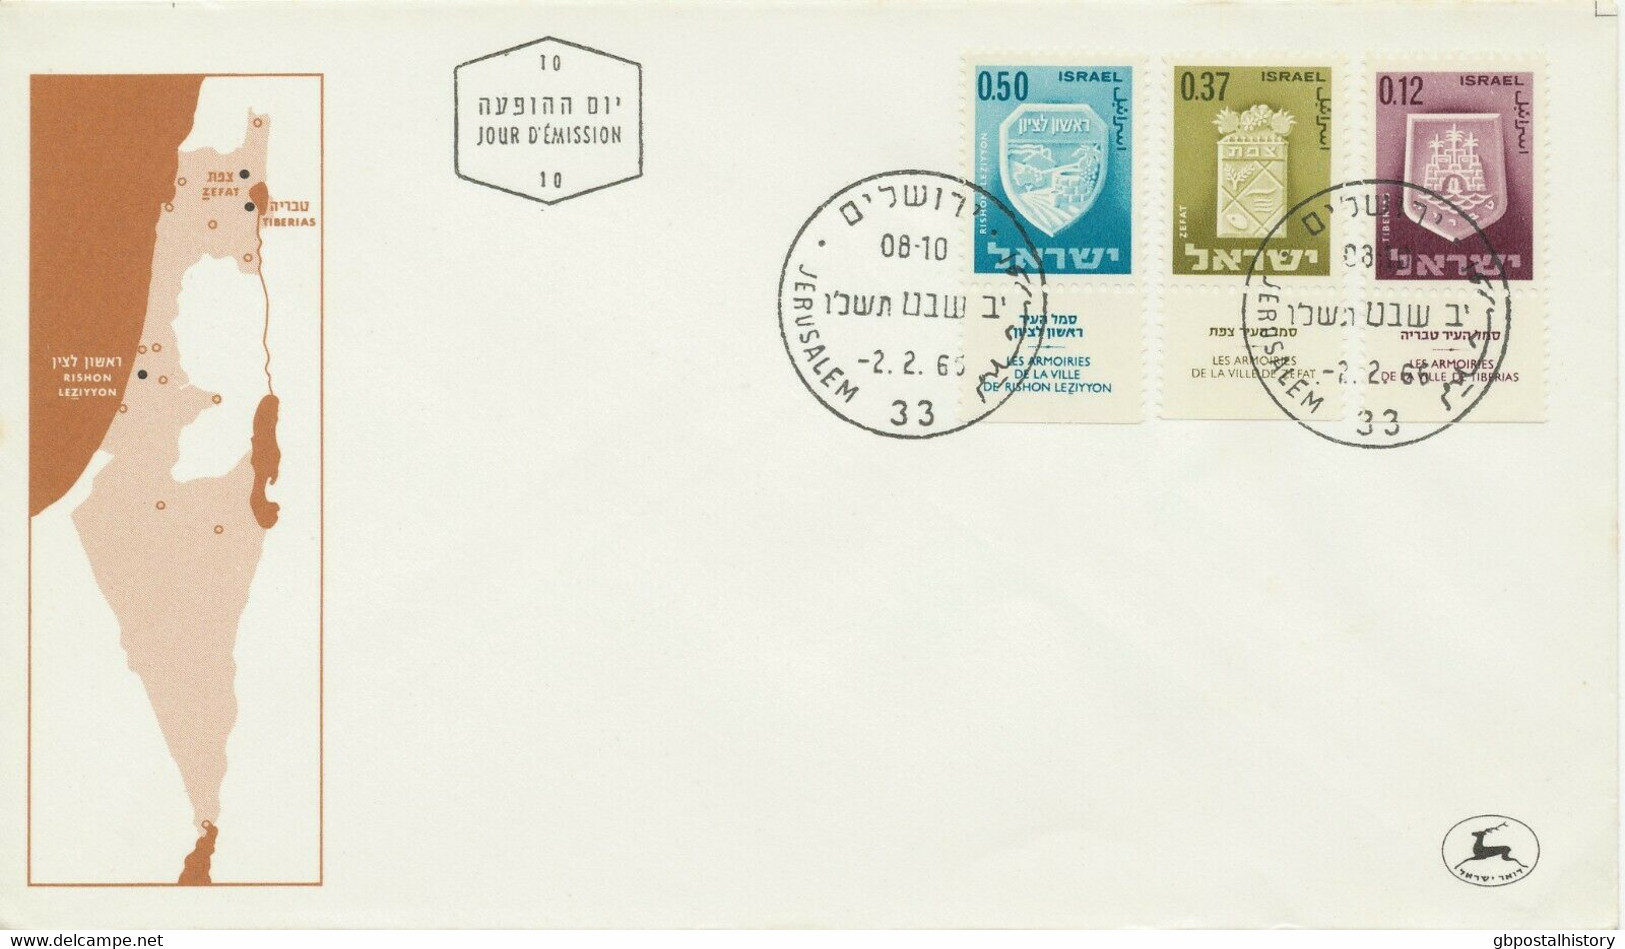 ISRAEL 1965/7, Wappen von Städten und Orten Israels kpl. mit Zierfeld a. 7 FDC's